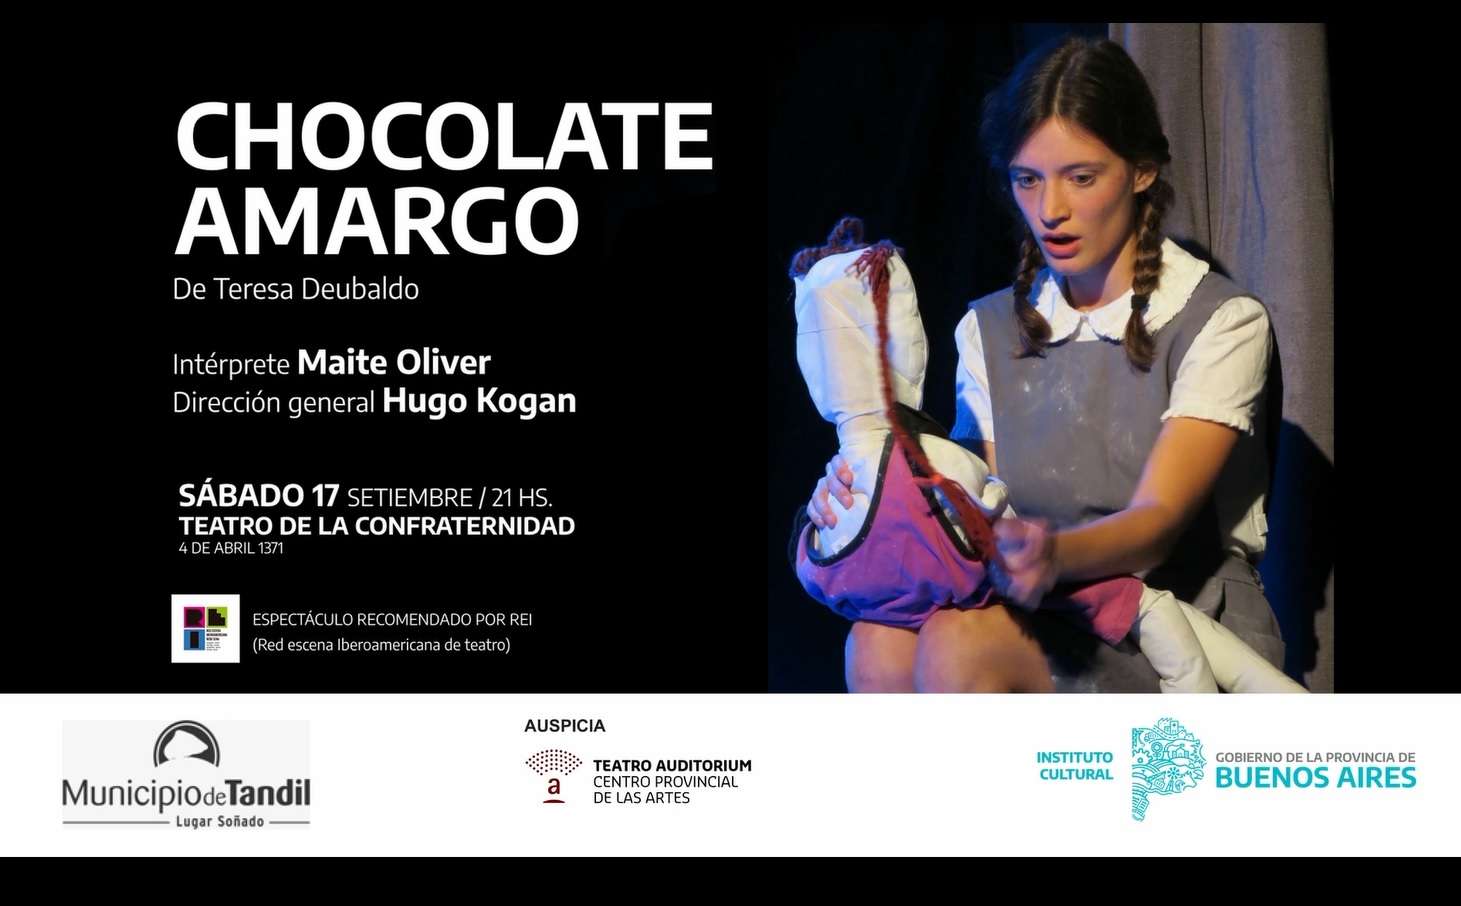 "Chocolate Amargo" se presenta el sábado 17 en el Teatro de la confraternidad